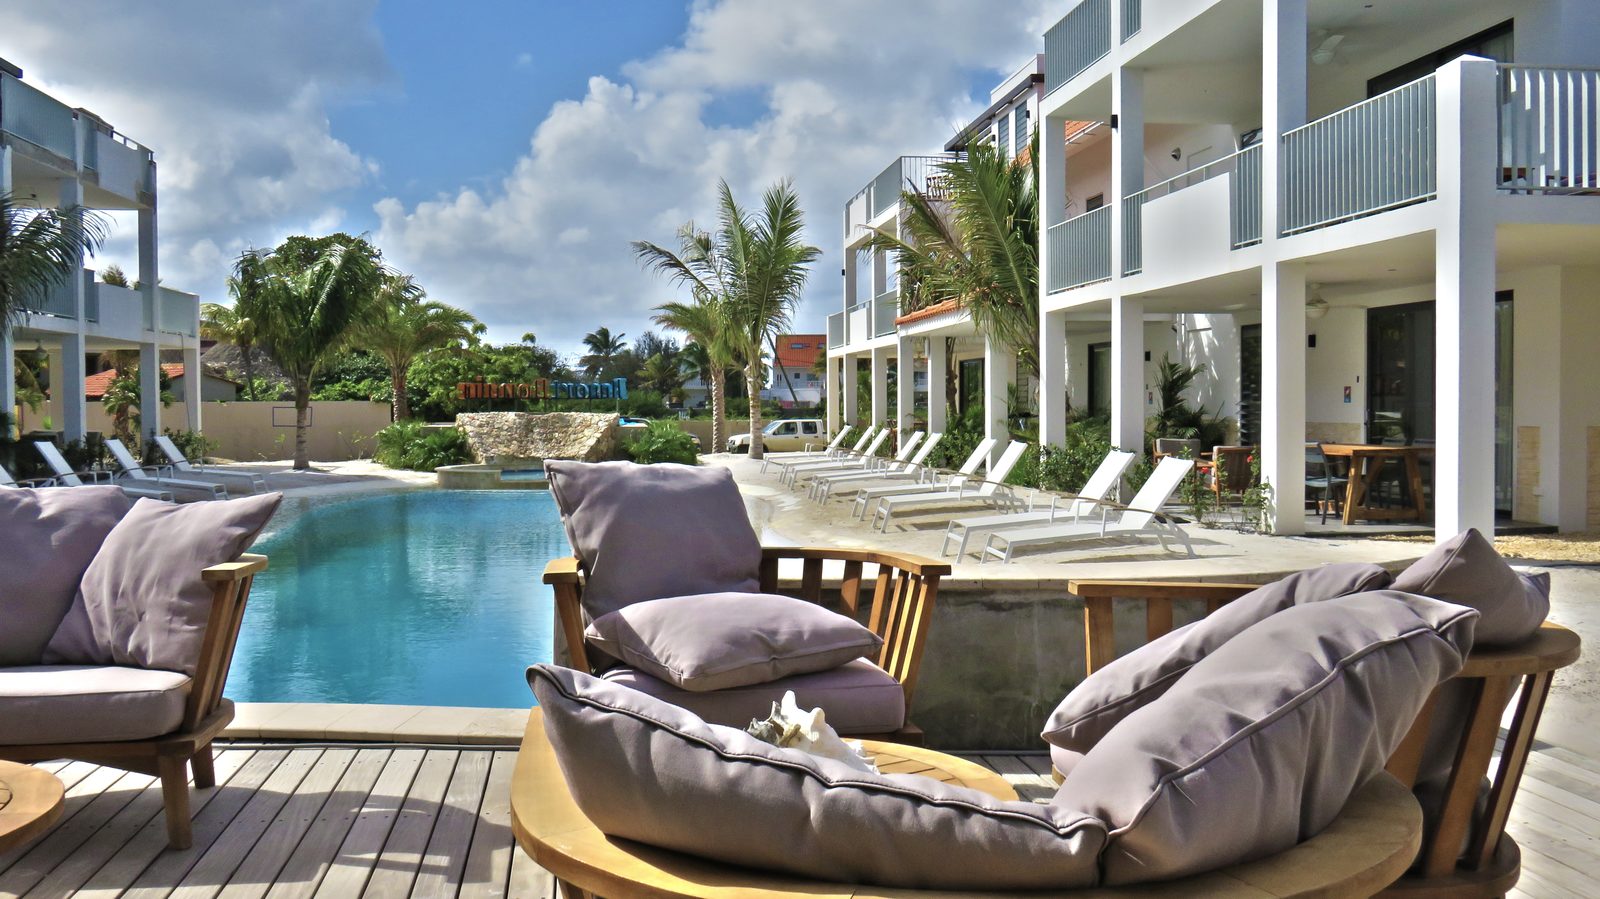 Resort Bonaire permet à ses clients de tous âges de profiter de cette magnifique île. Consultez nos photos et réservez votre séjour à Bonaire !